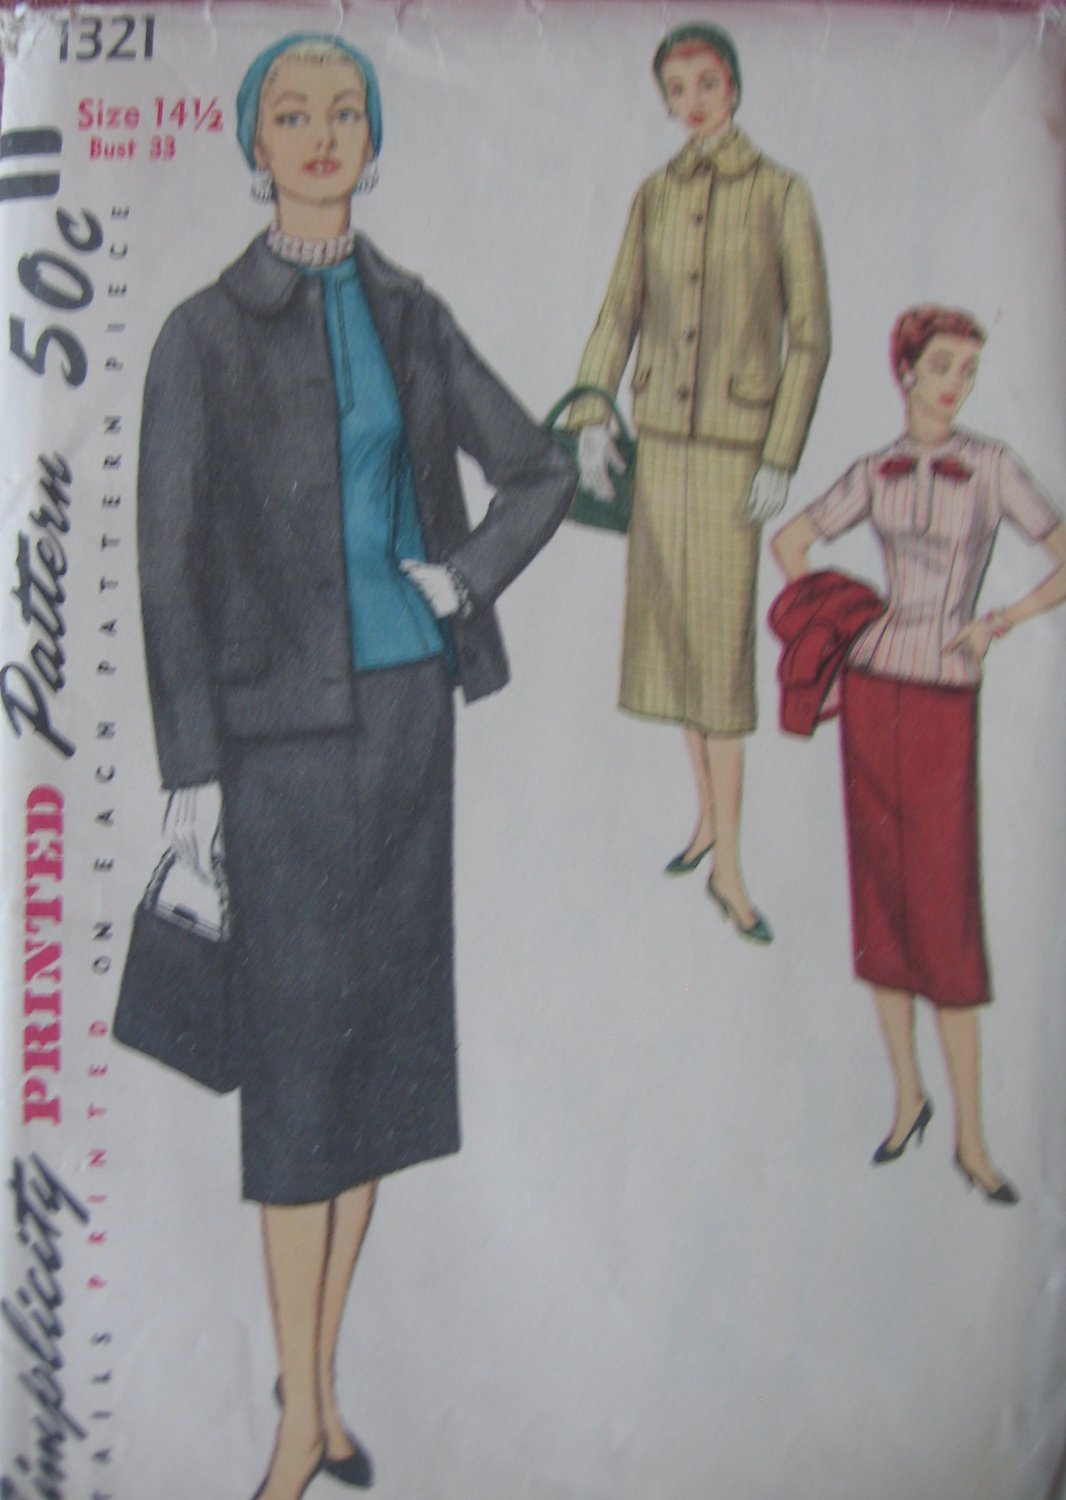 Vintage 3 Piece Suit Jacket Skirt Overblouse Pattern Simplicity 1321 sz 14 1/2